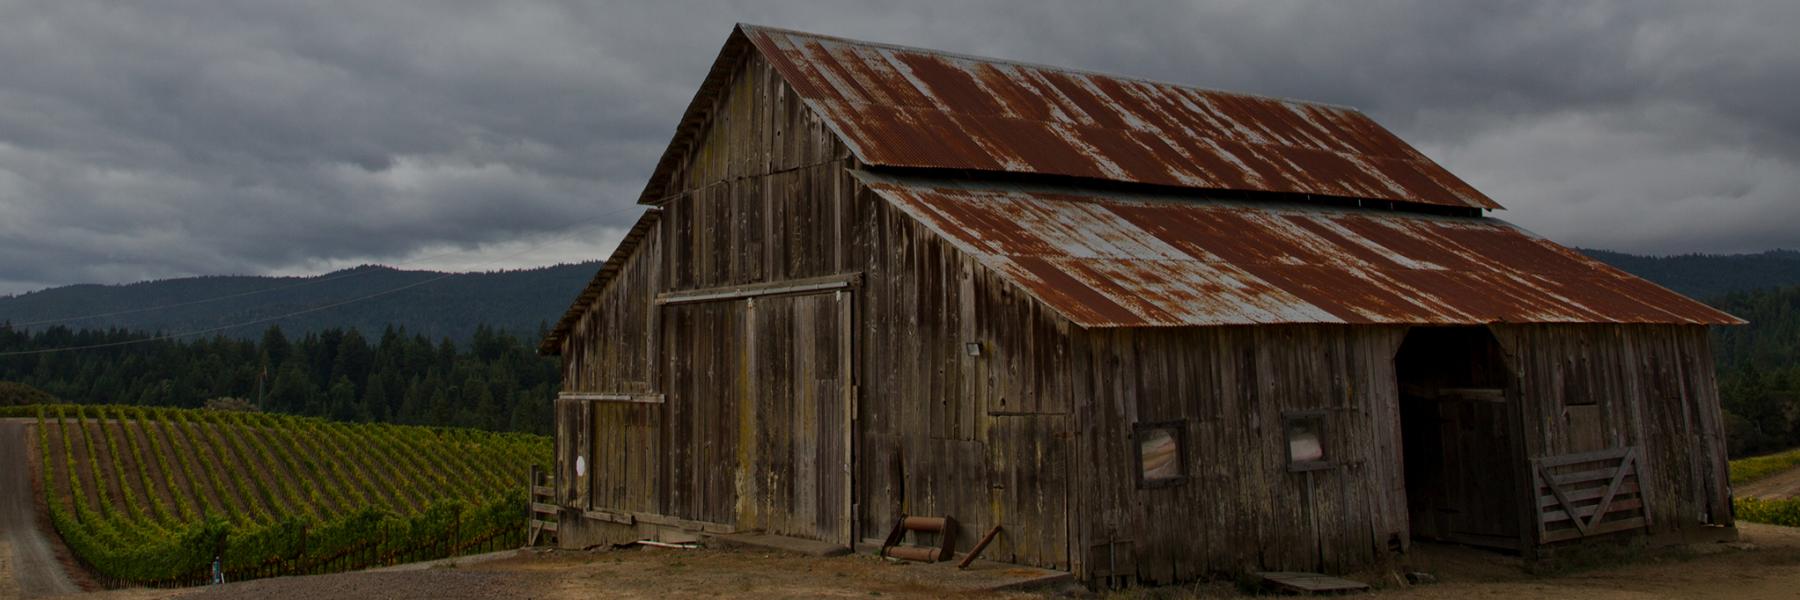 Maggy Hawk estate vineyard and barn, Anderson Valley, Mendocino County, California 